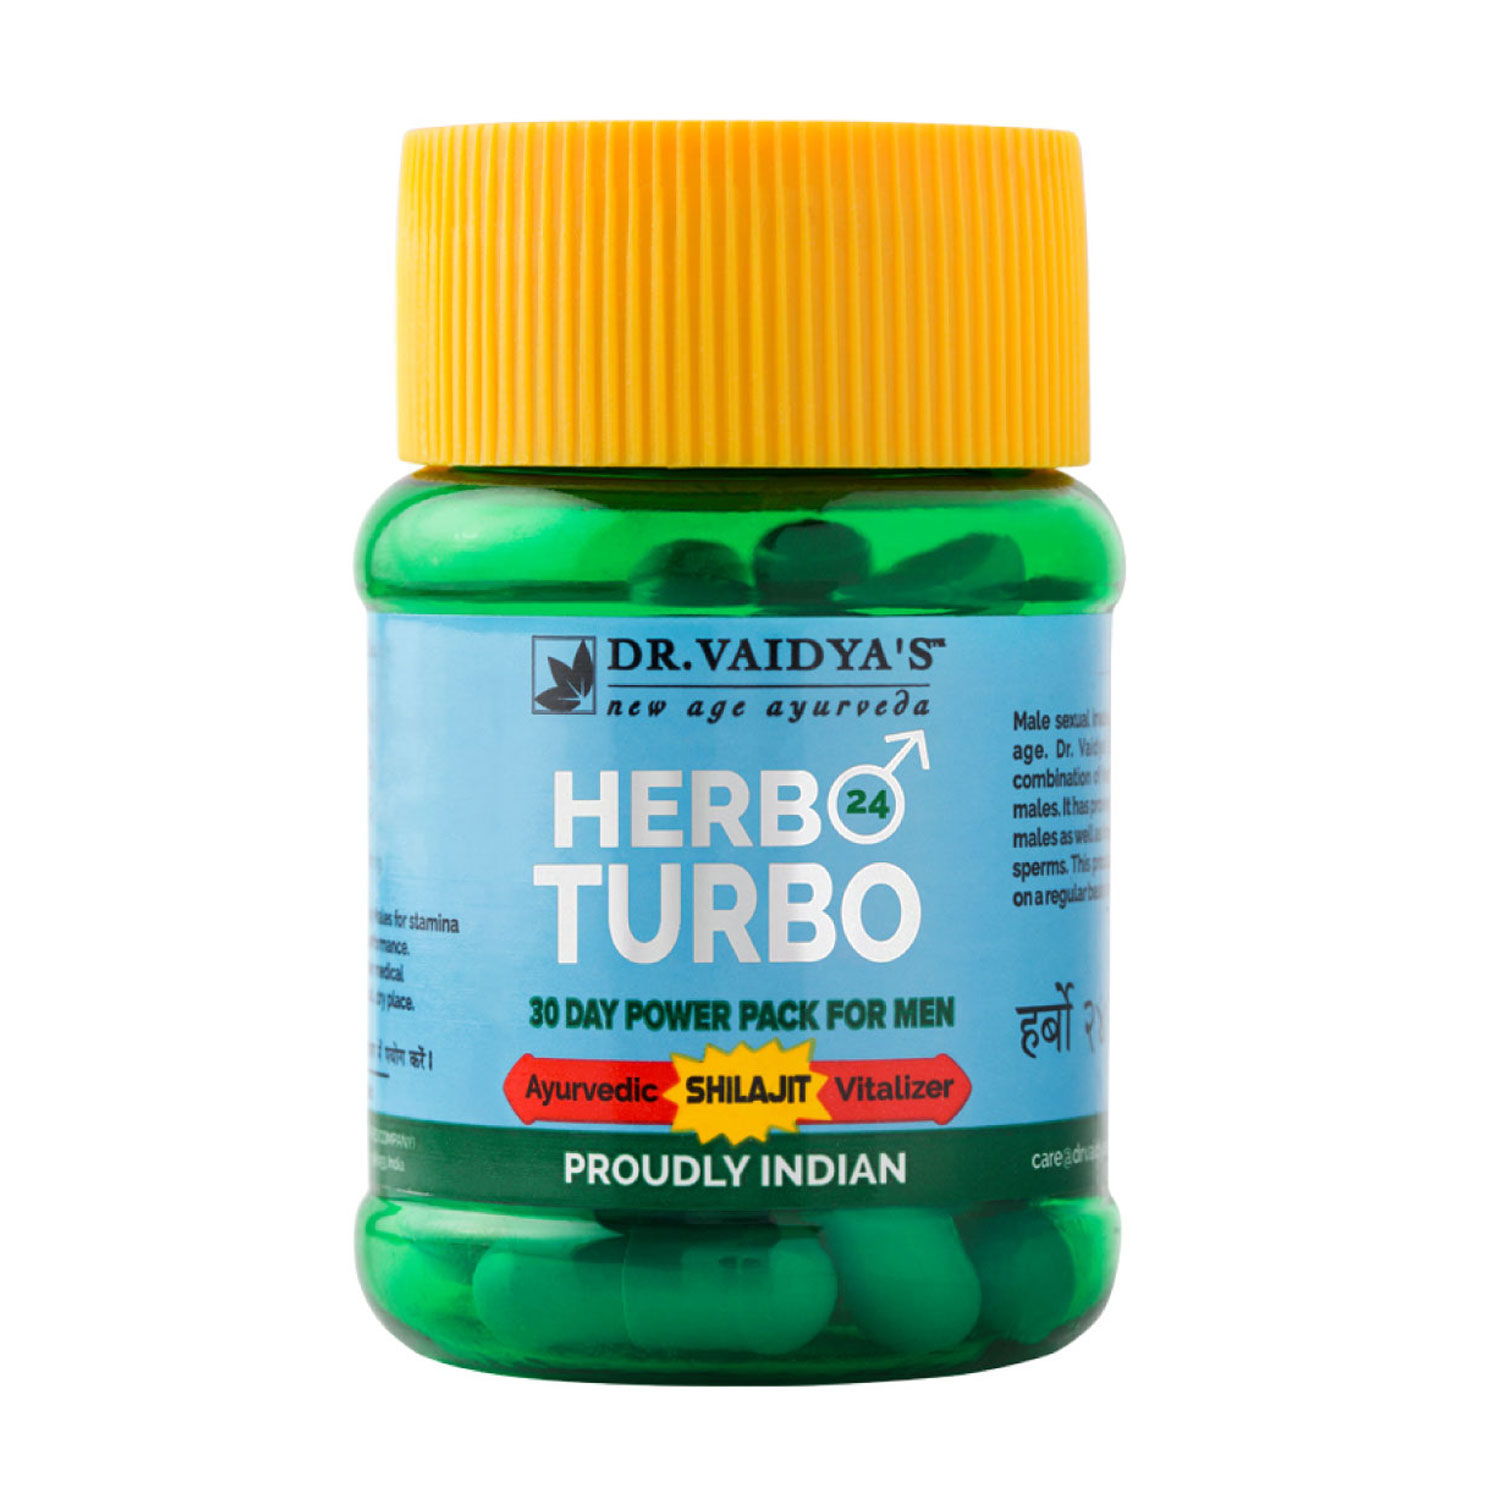 Buy Dr. Vaidya's Herbo24Turbo - Purplle